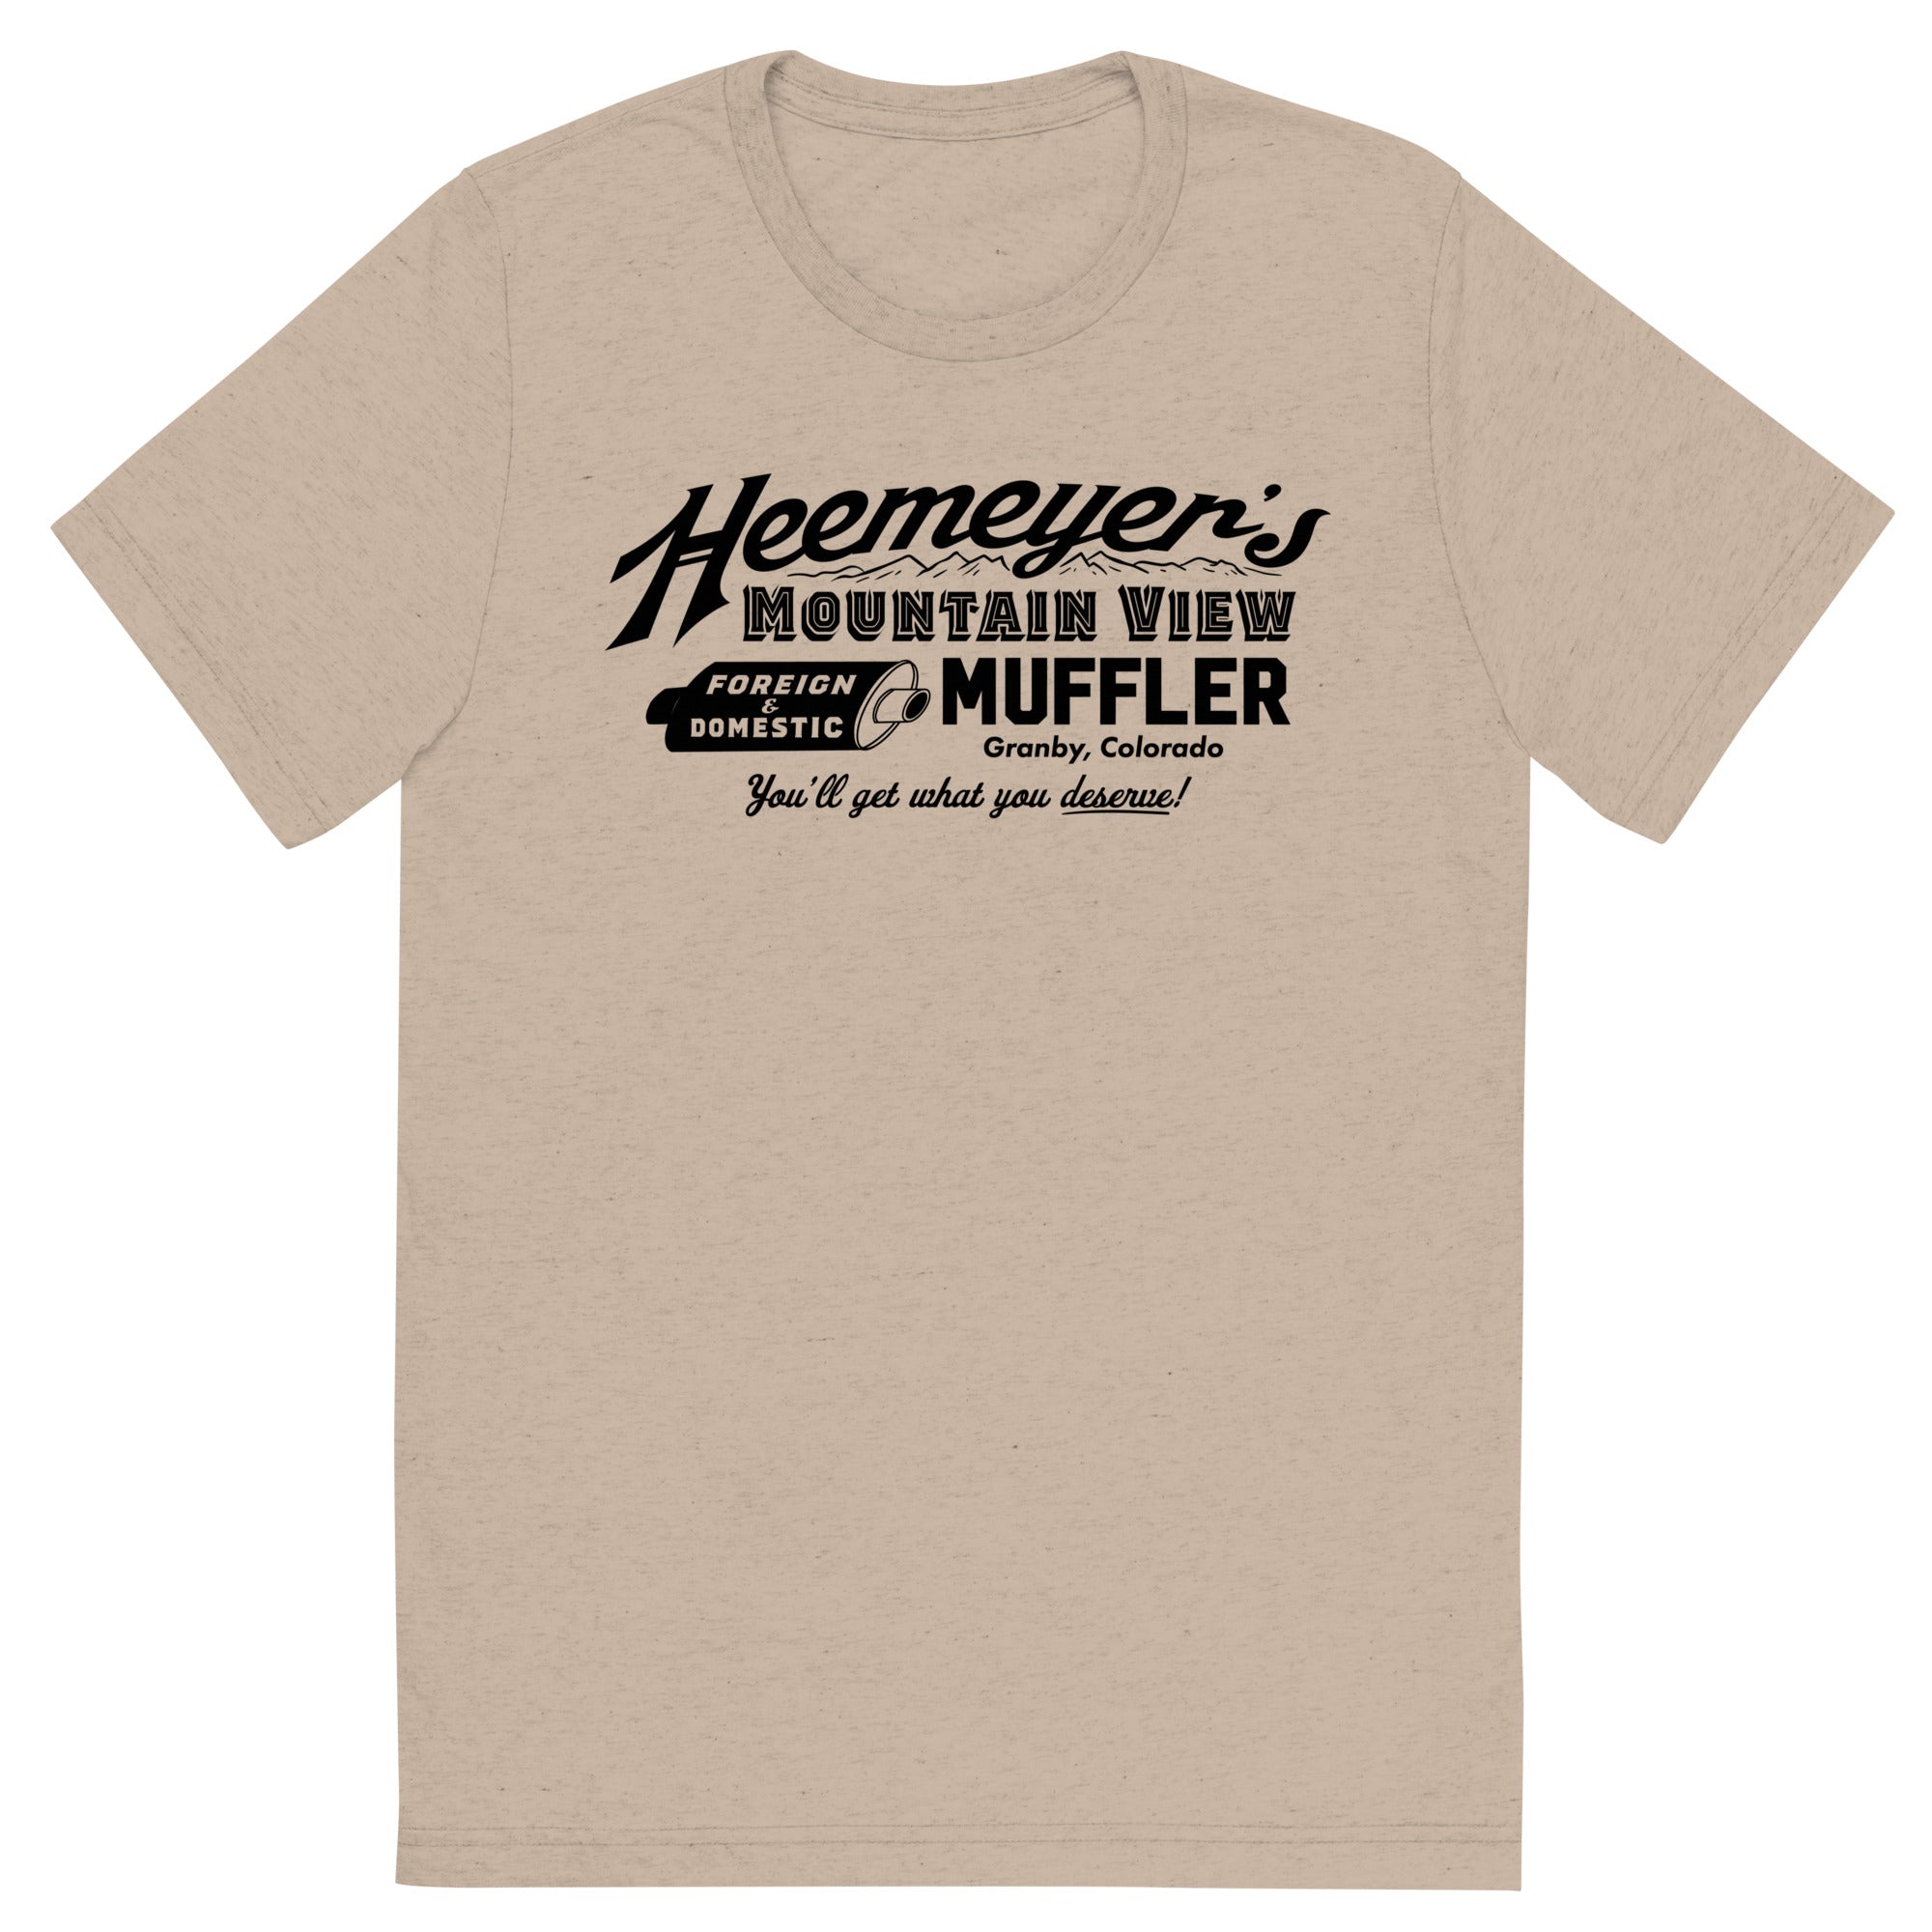 Heemeyer's Mountain View Muffler Tri-Blend T-Shirt